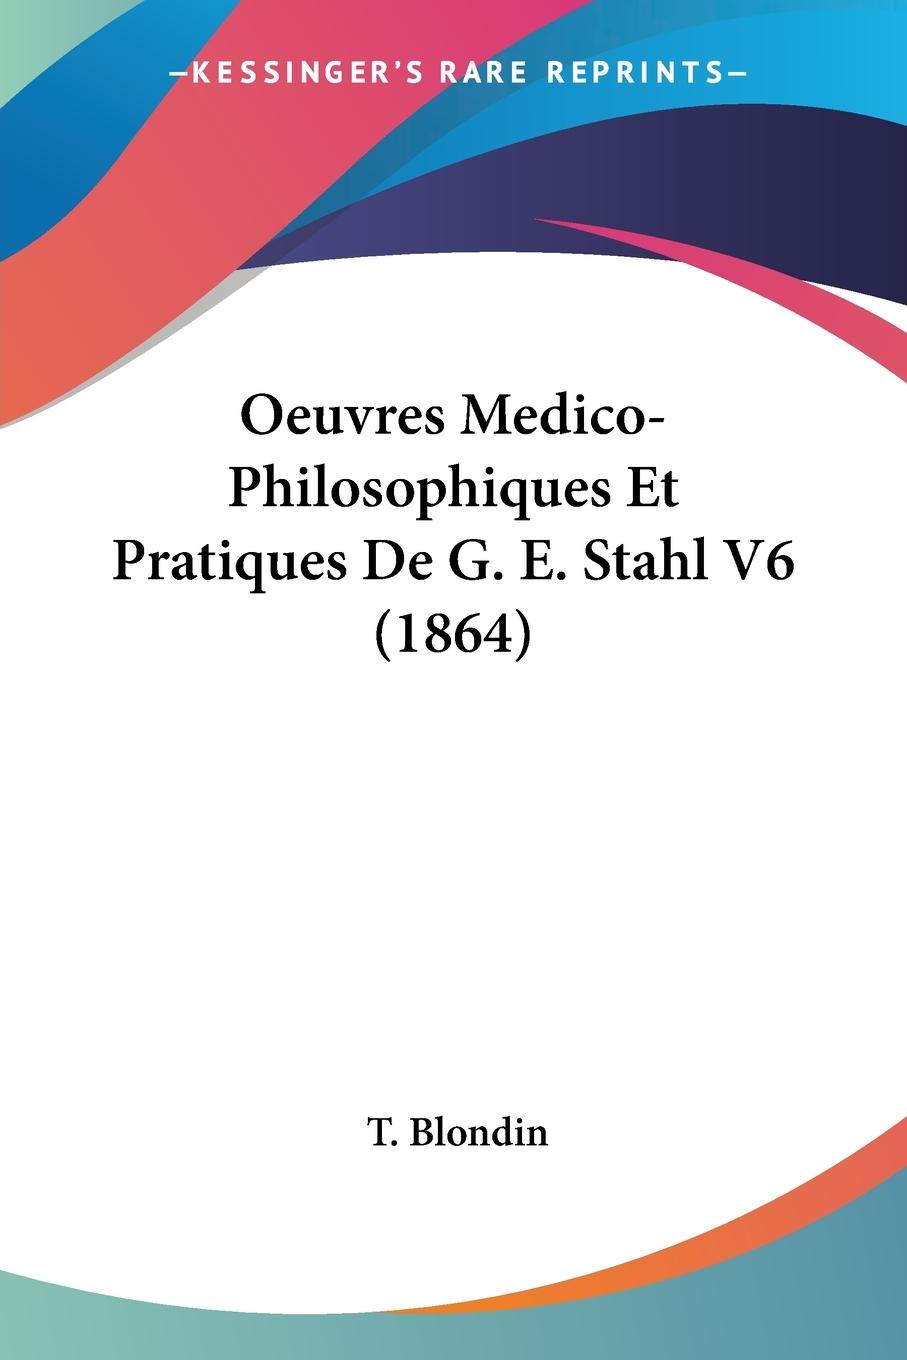 Oeuvres Medico-Philosophiques Et Pratiques De G. E. Stahl V6 (1864) - Blondin, T.